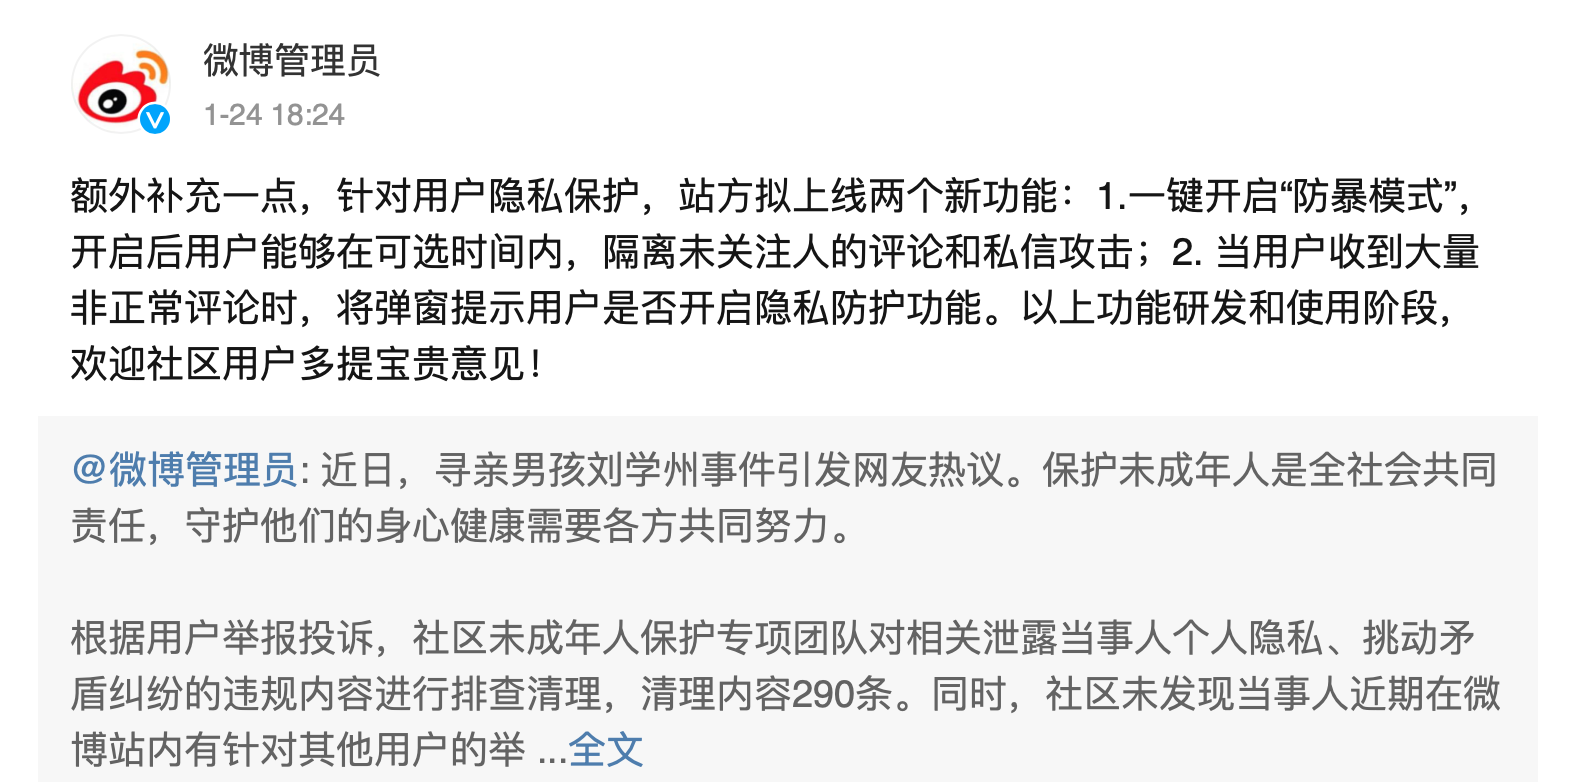 fangbao - Le nuove funzioni che Weibo, Douban e Douyin stanno svolgendo finalmente rendono la cyber-violenza non più irrisolta